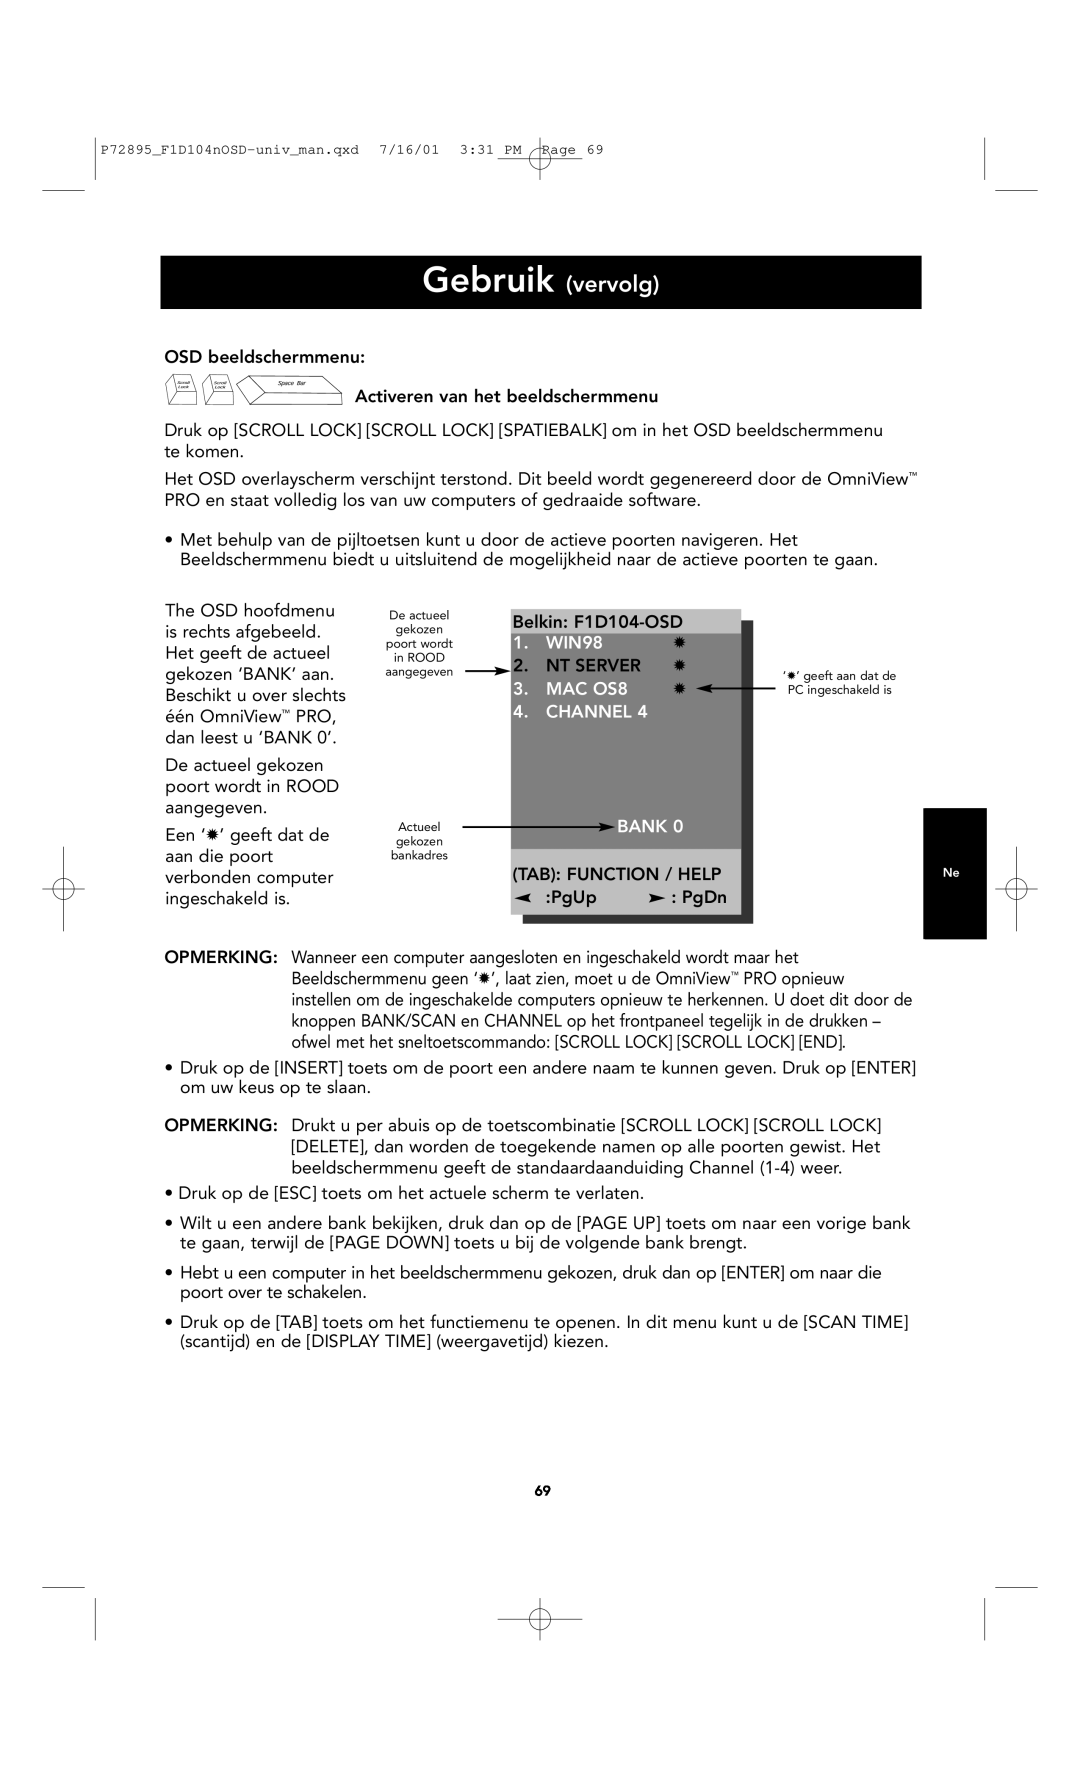 Belkin F1D104-OSD user manual Gebruik vervolg, WIN98, MAC OS8, Channel, Bank 